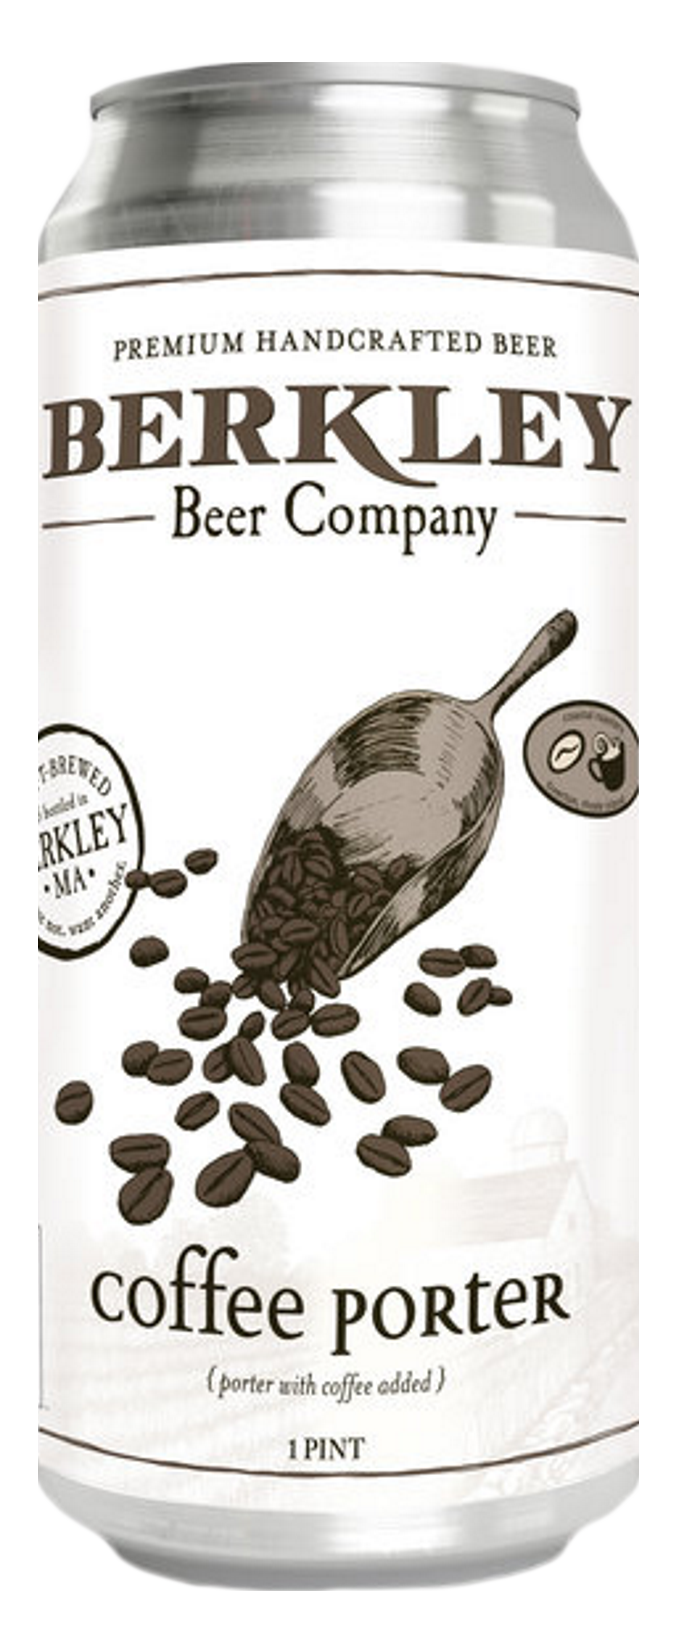 Produktbild von Berkley Coffee Porter